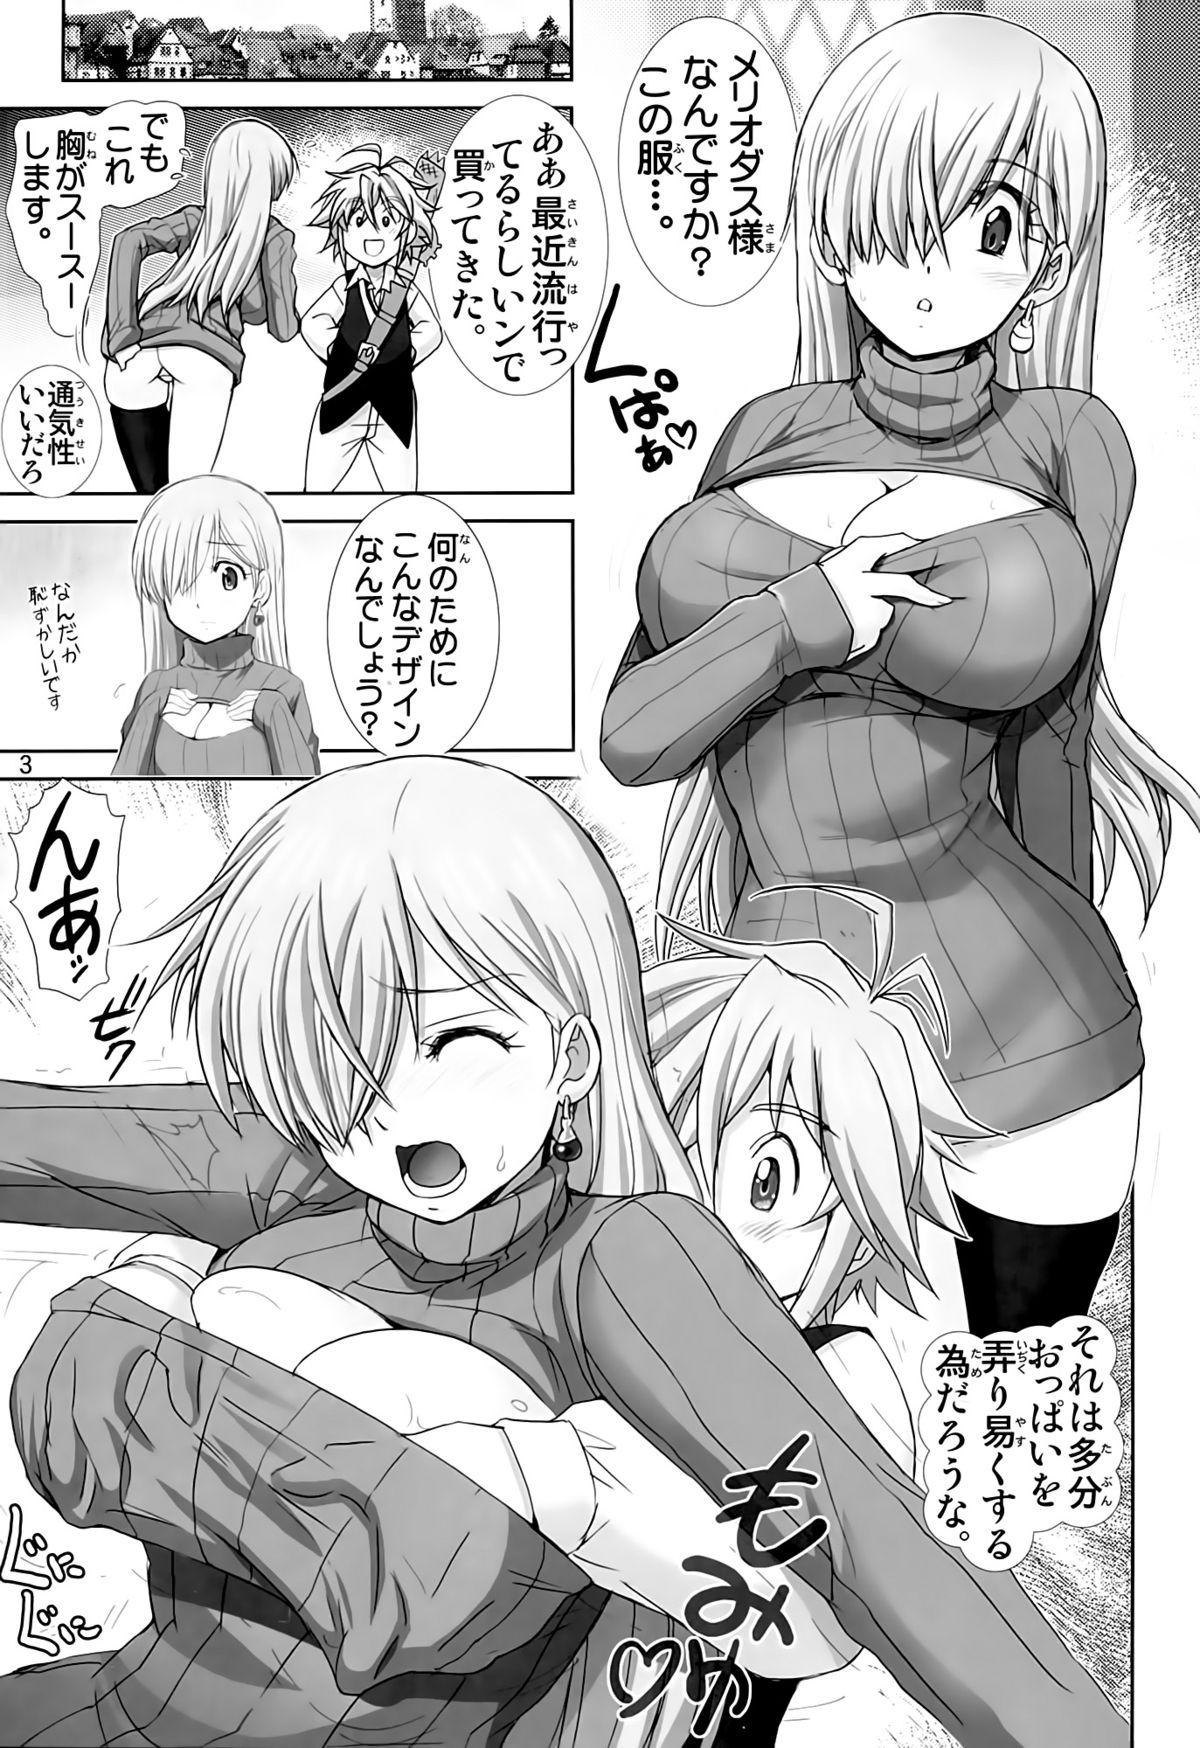 Stepfather Elizabeth ni Rei no Sweater Kisete mita - Nanatsu no taizai Maid - Page 2